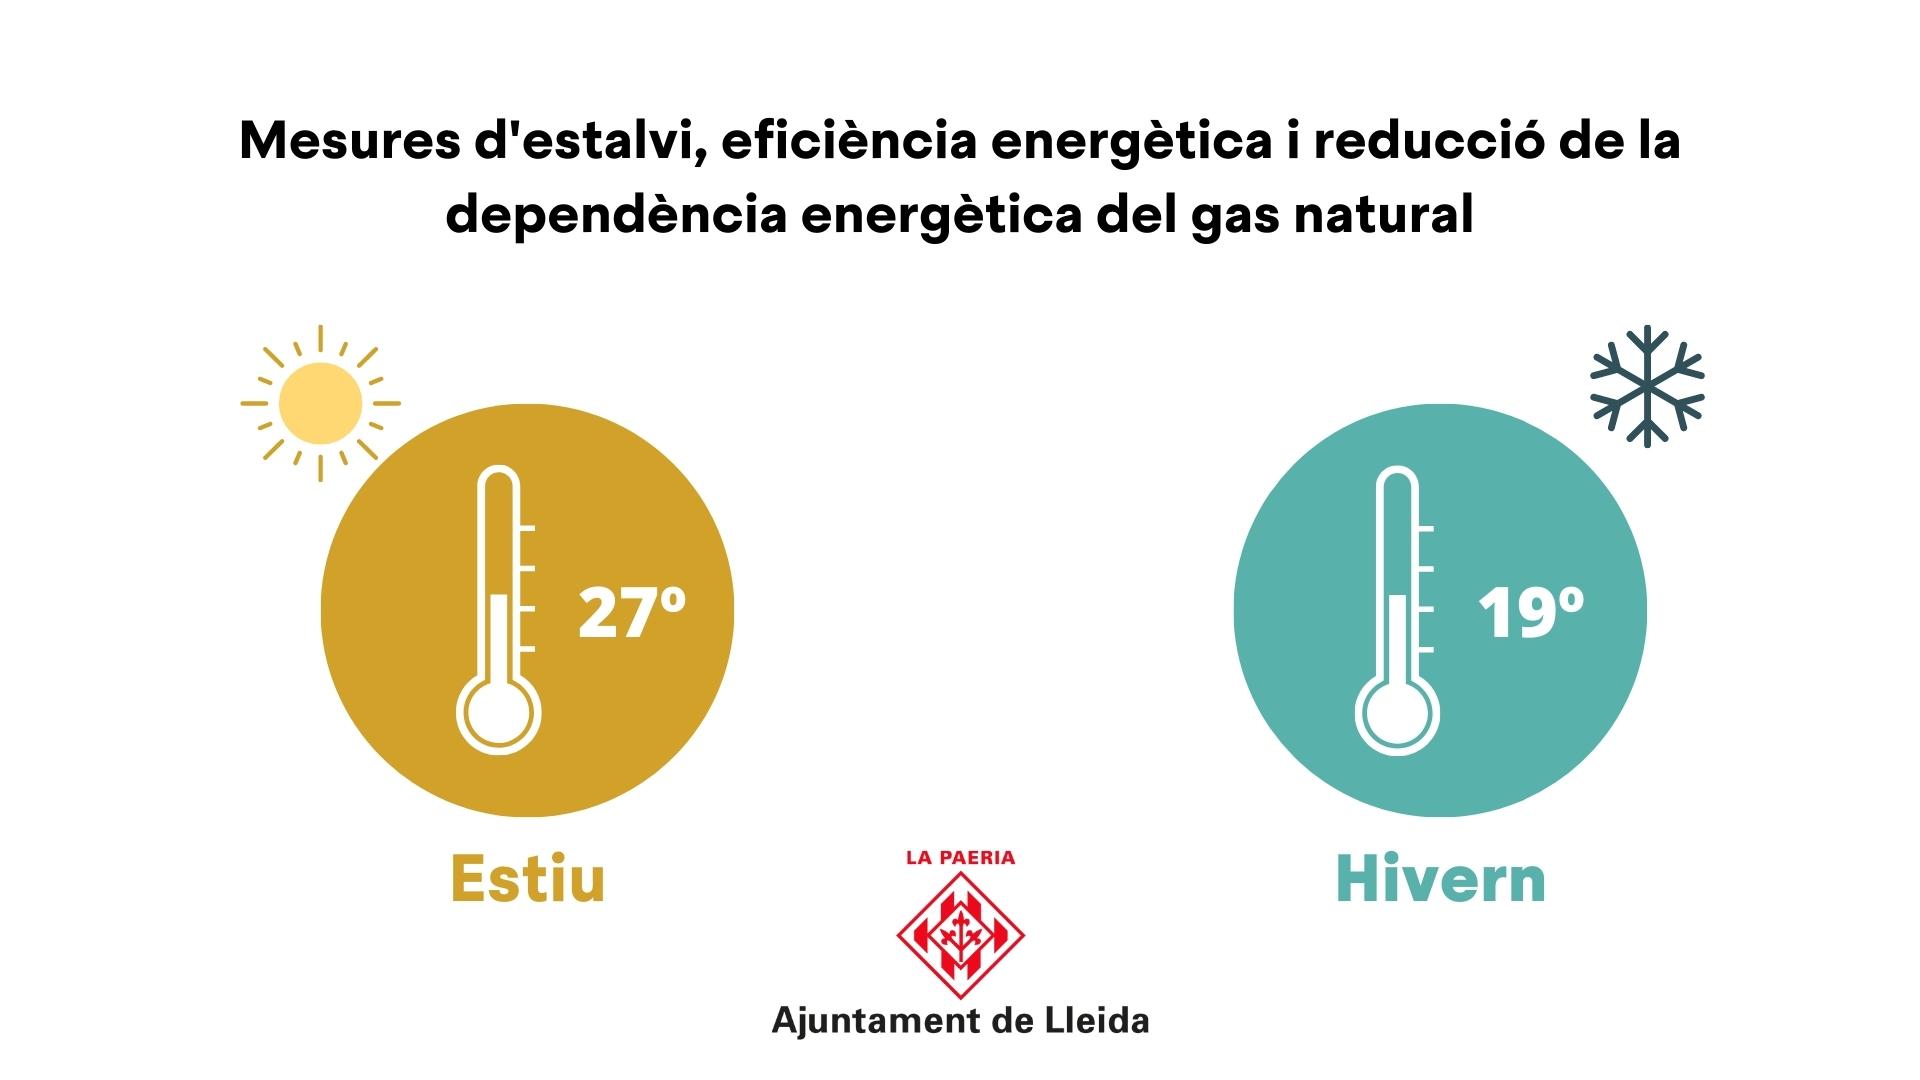 Mesures d'estalvi, eficiència energètica i reducció de la dependència energètica 